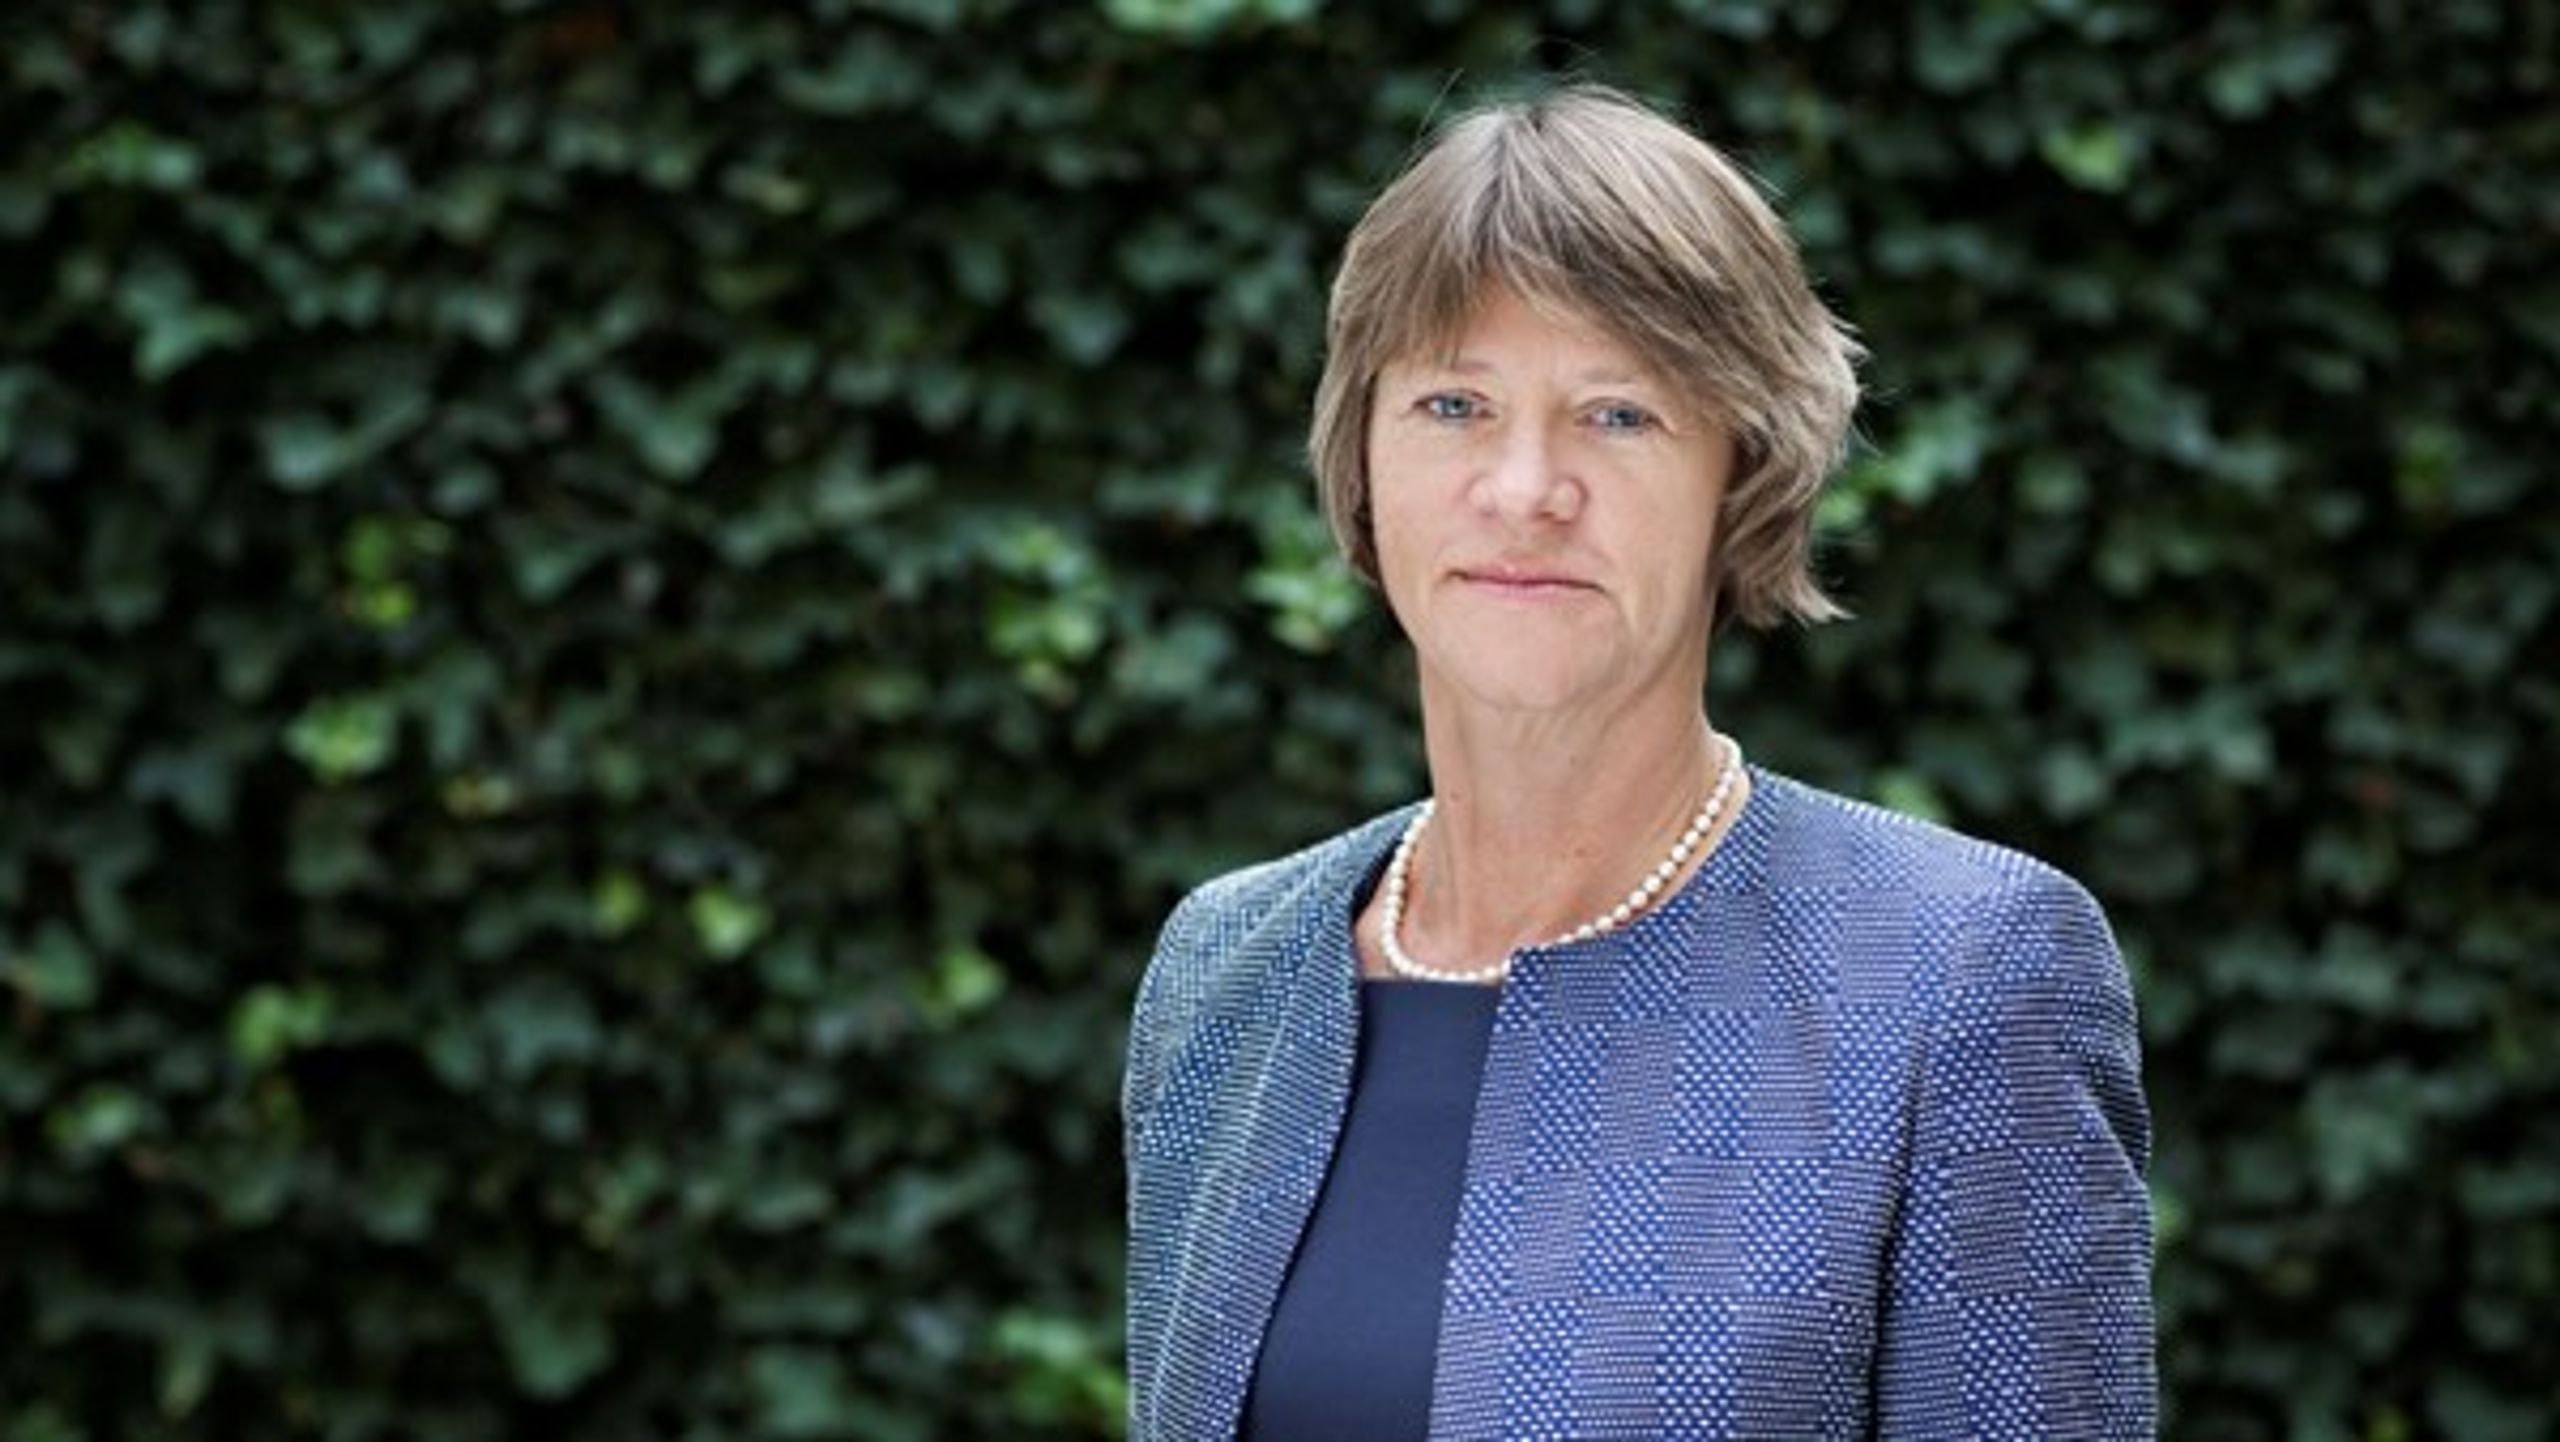 Administrerende direktør i Finanssektorens Arbejdsgiverforening, Mariane Dissing er bekymret over, at et flertal af Christiansborgs politikere ikke løfter deres ansvar, når det gælder fremtidens pensionssystem.